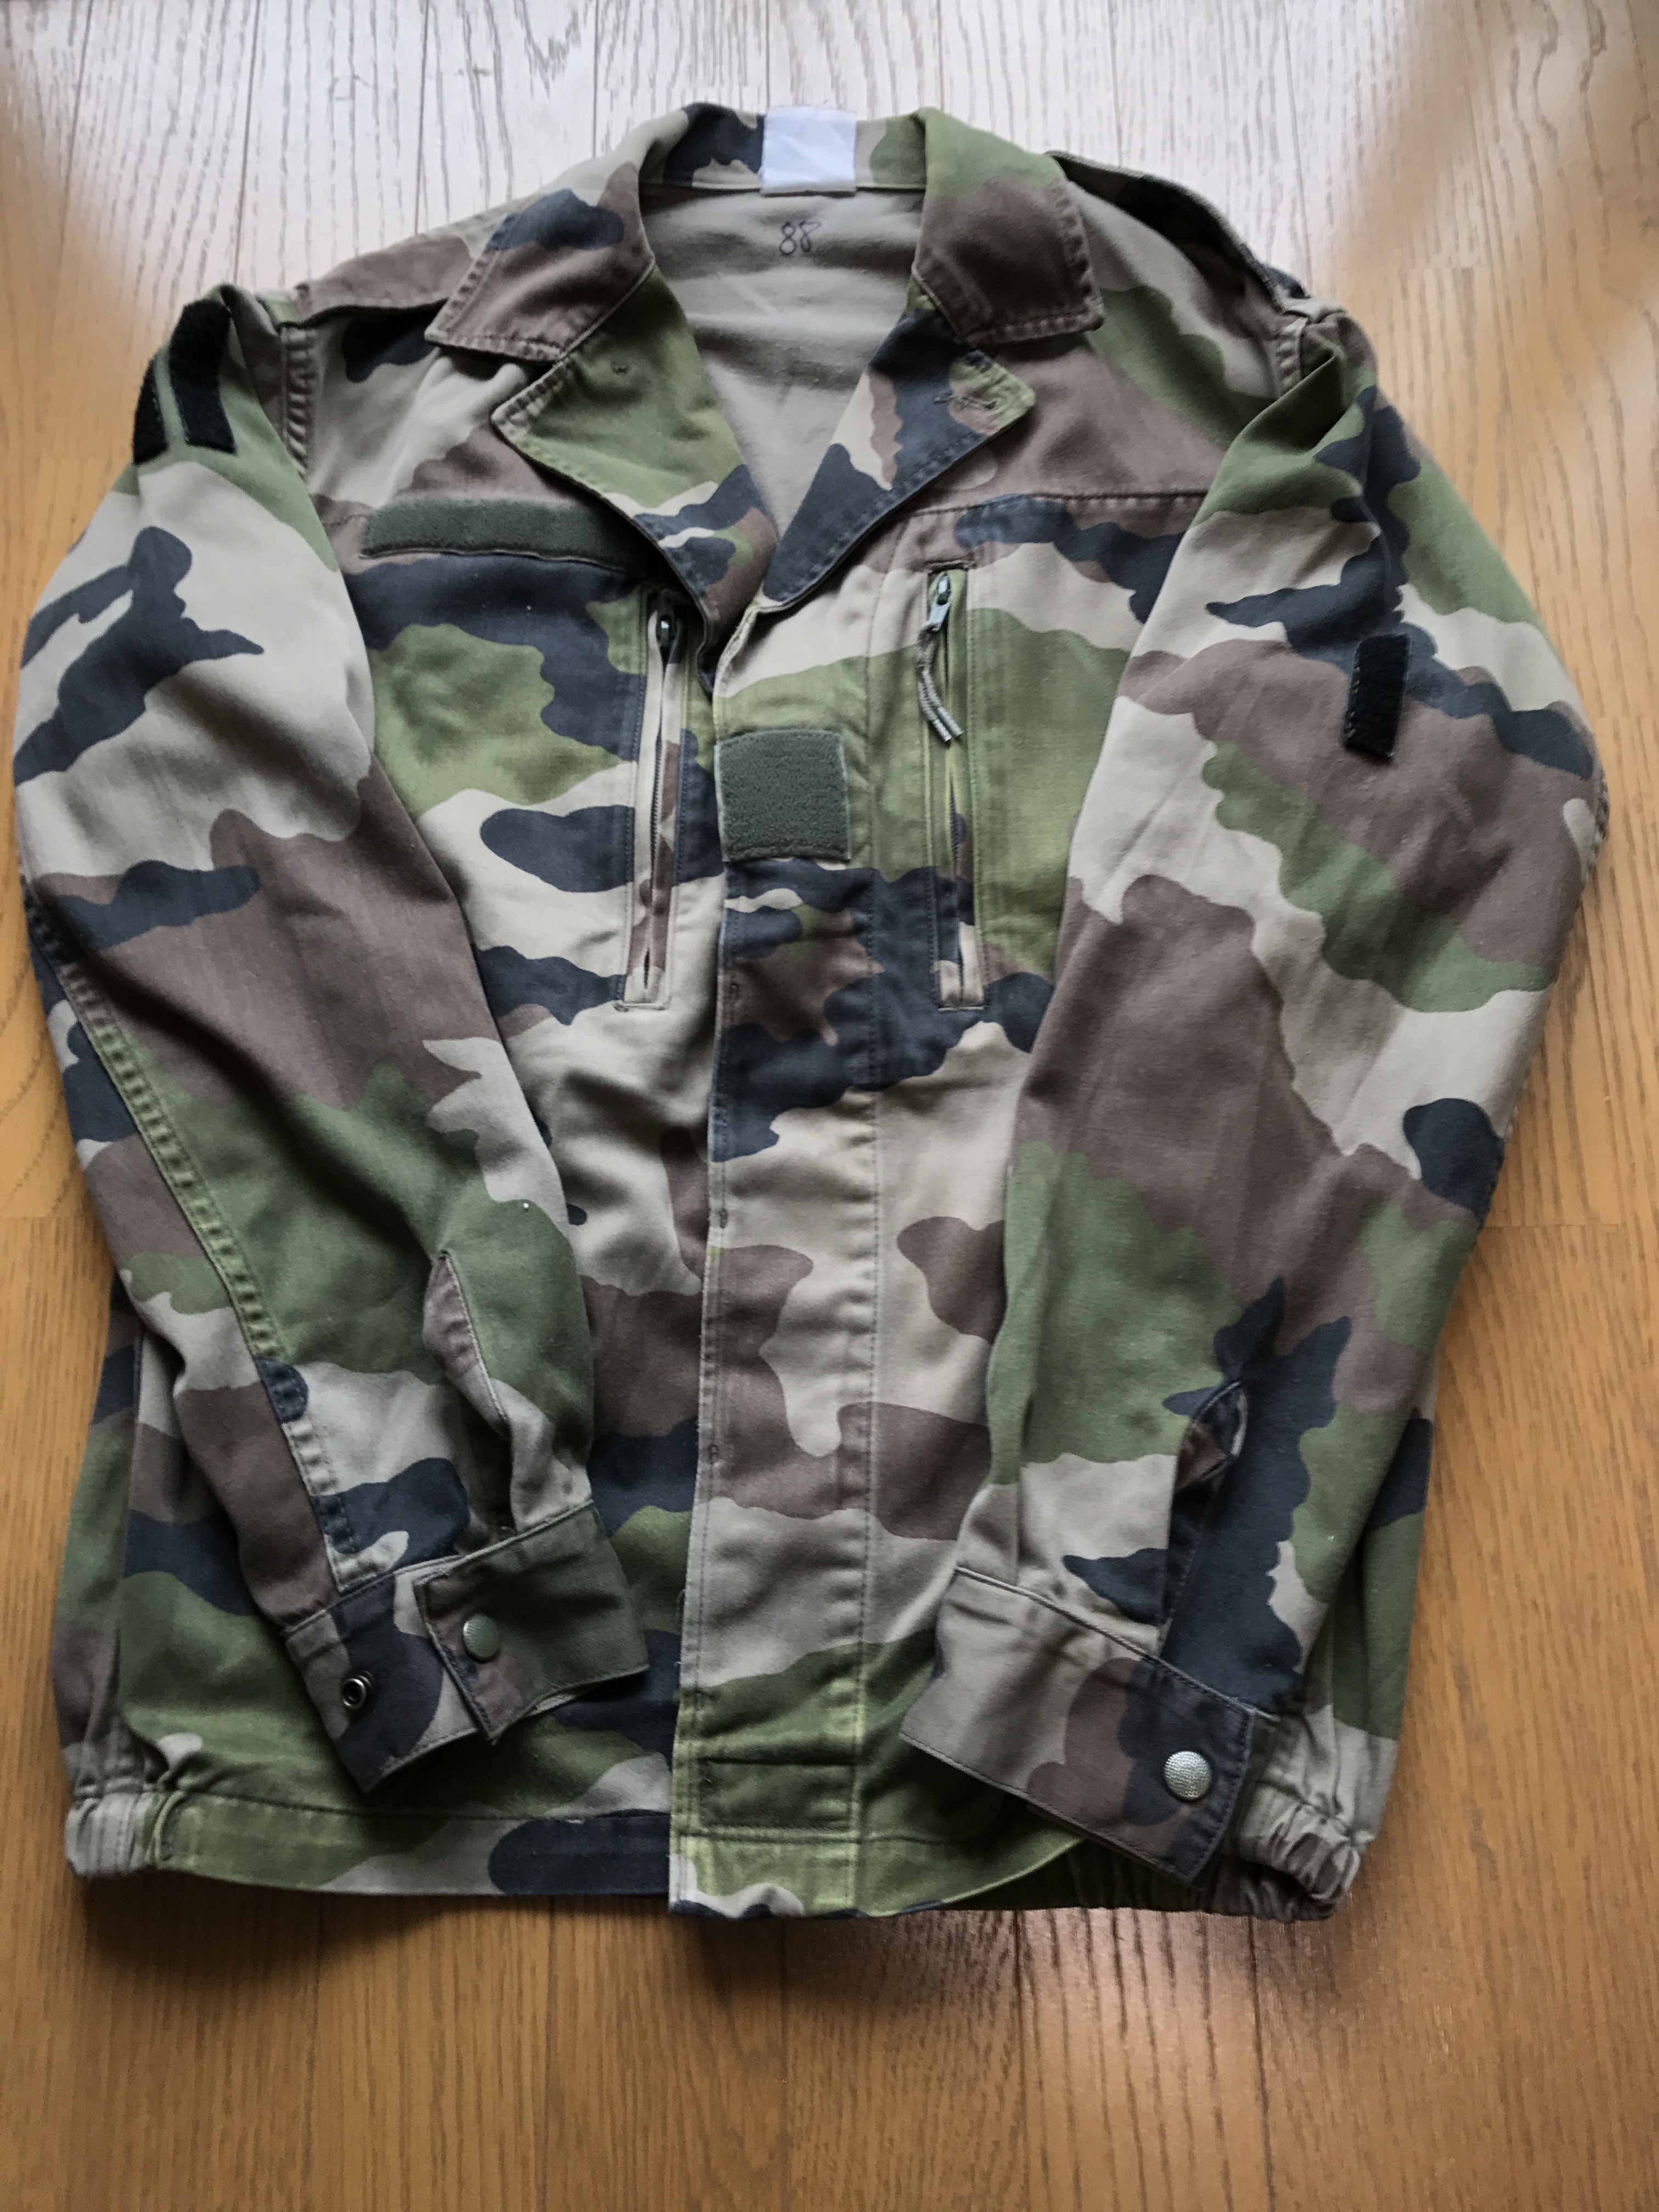 2500円で買える格安アウター中田商店のフランス軍F2ジャケット - 服ログ